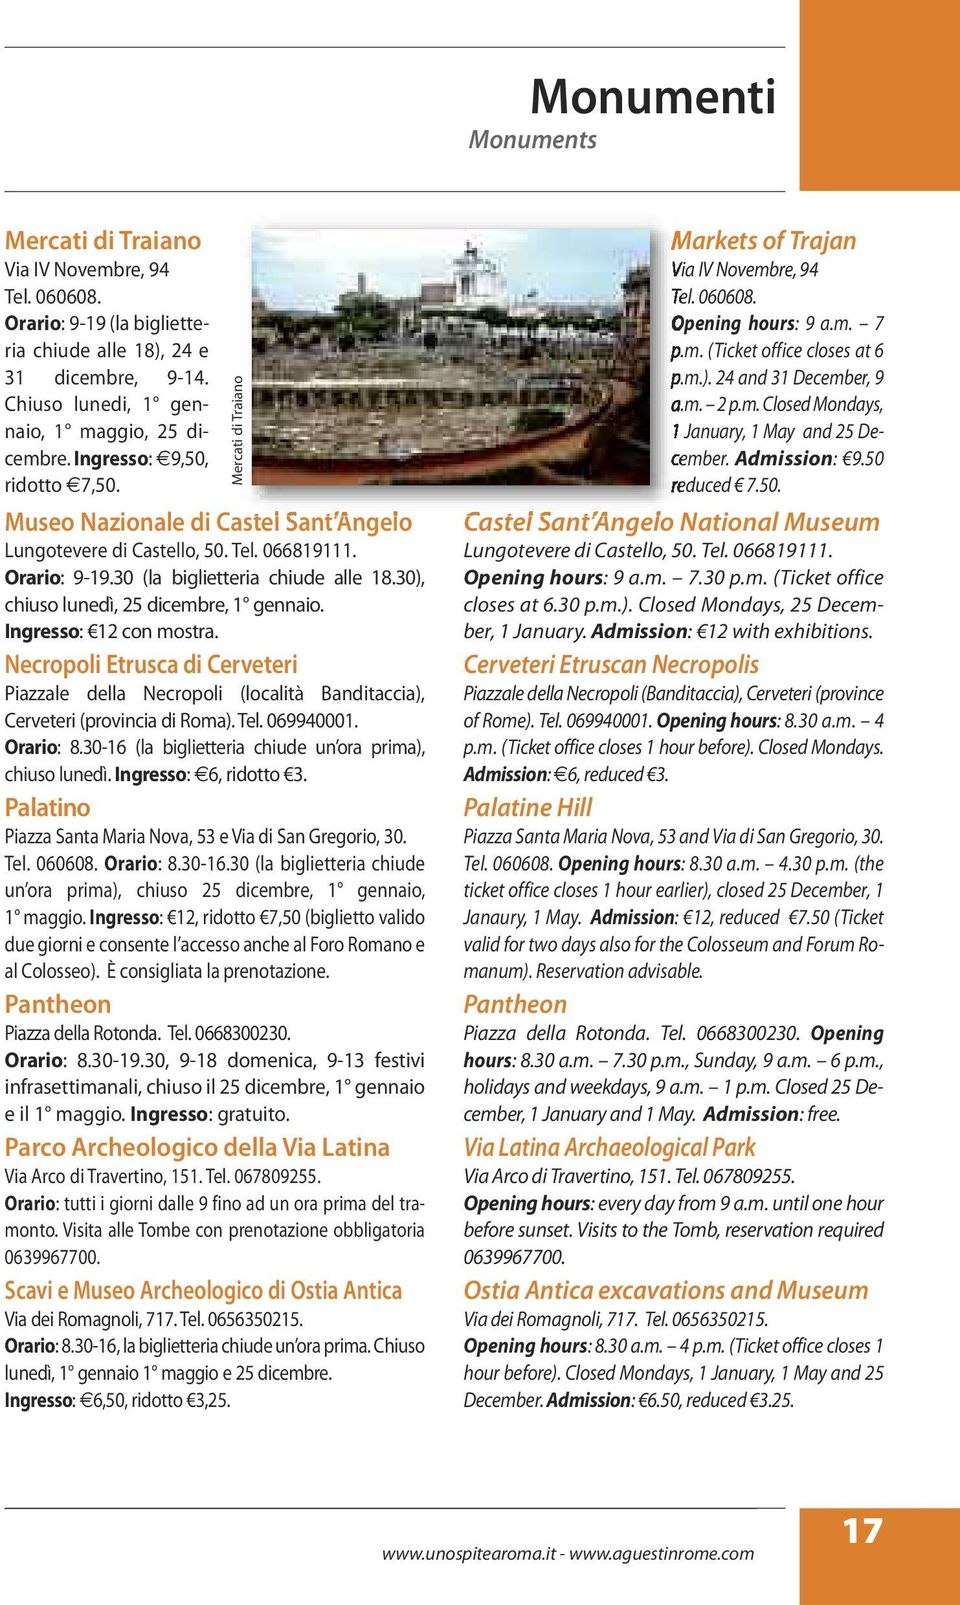 30), chiuso lunedì, 25 dicembre, 1 gennaio. Ingresso: 12 con mostra. Necropoli Etrusca di Cerveteri Piazzale della Necropoli (località Banditaccia), Cerveteri (provincia di Roma). Tel. 069940001.